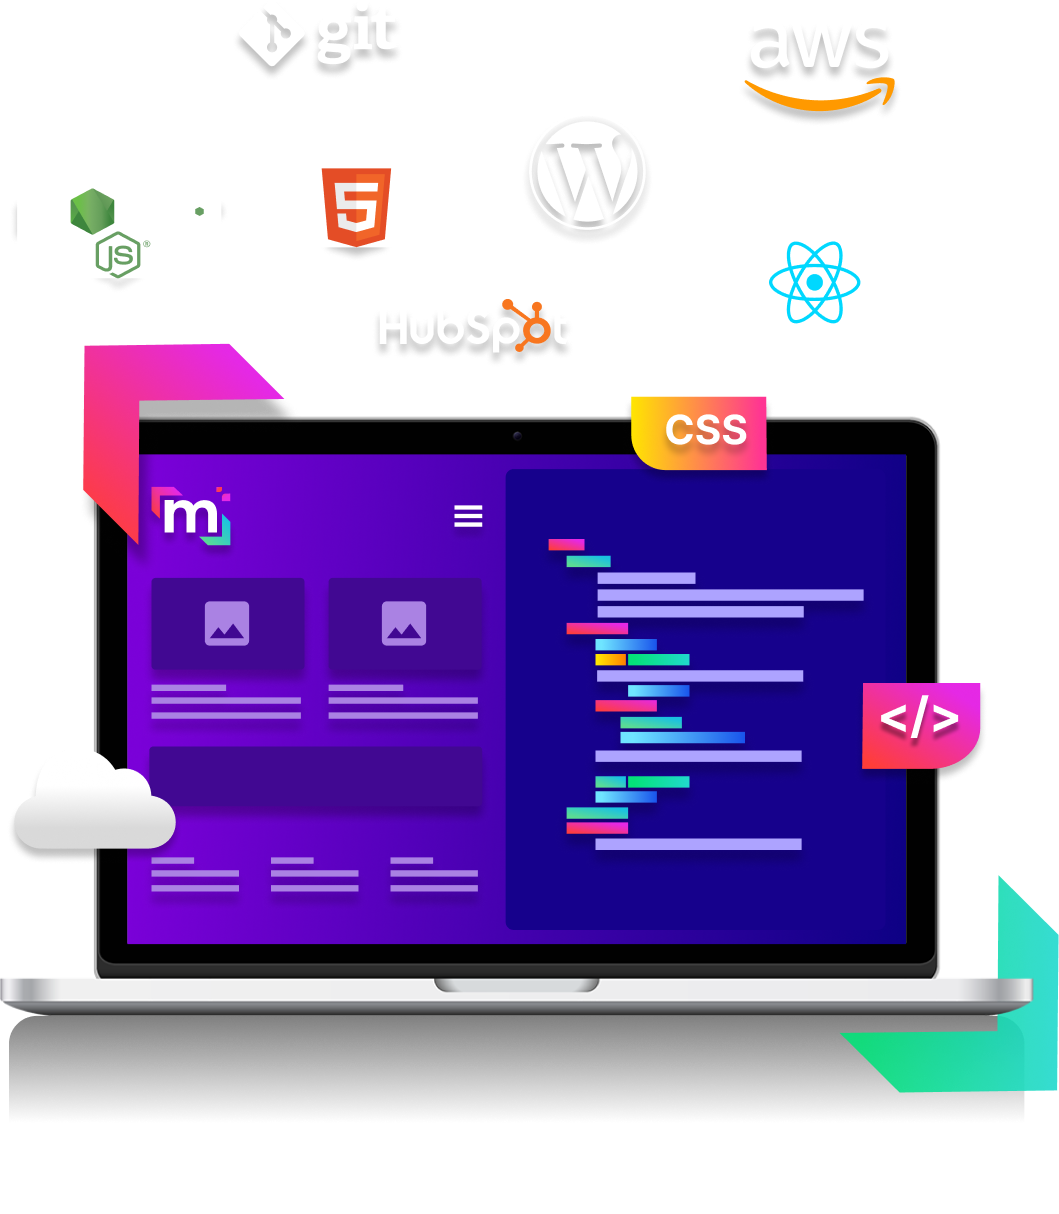 การพัฒนาเว็บไซต์โดยใช้เครื่องมือเขียนโปรแกรมที่หลากหลาย เช่น Node, HubSpot, WordPress, React, HTML และอื่น ๆ